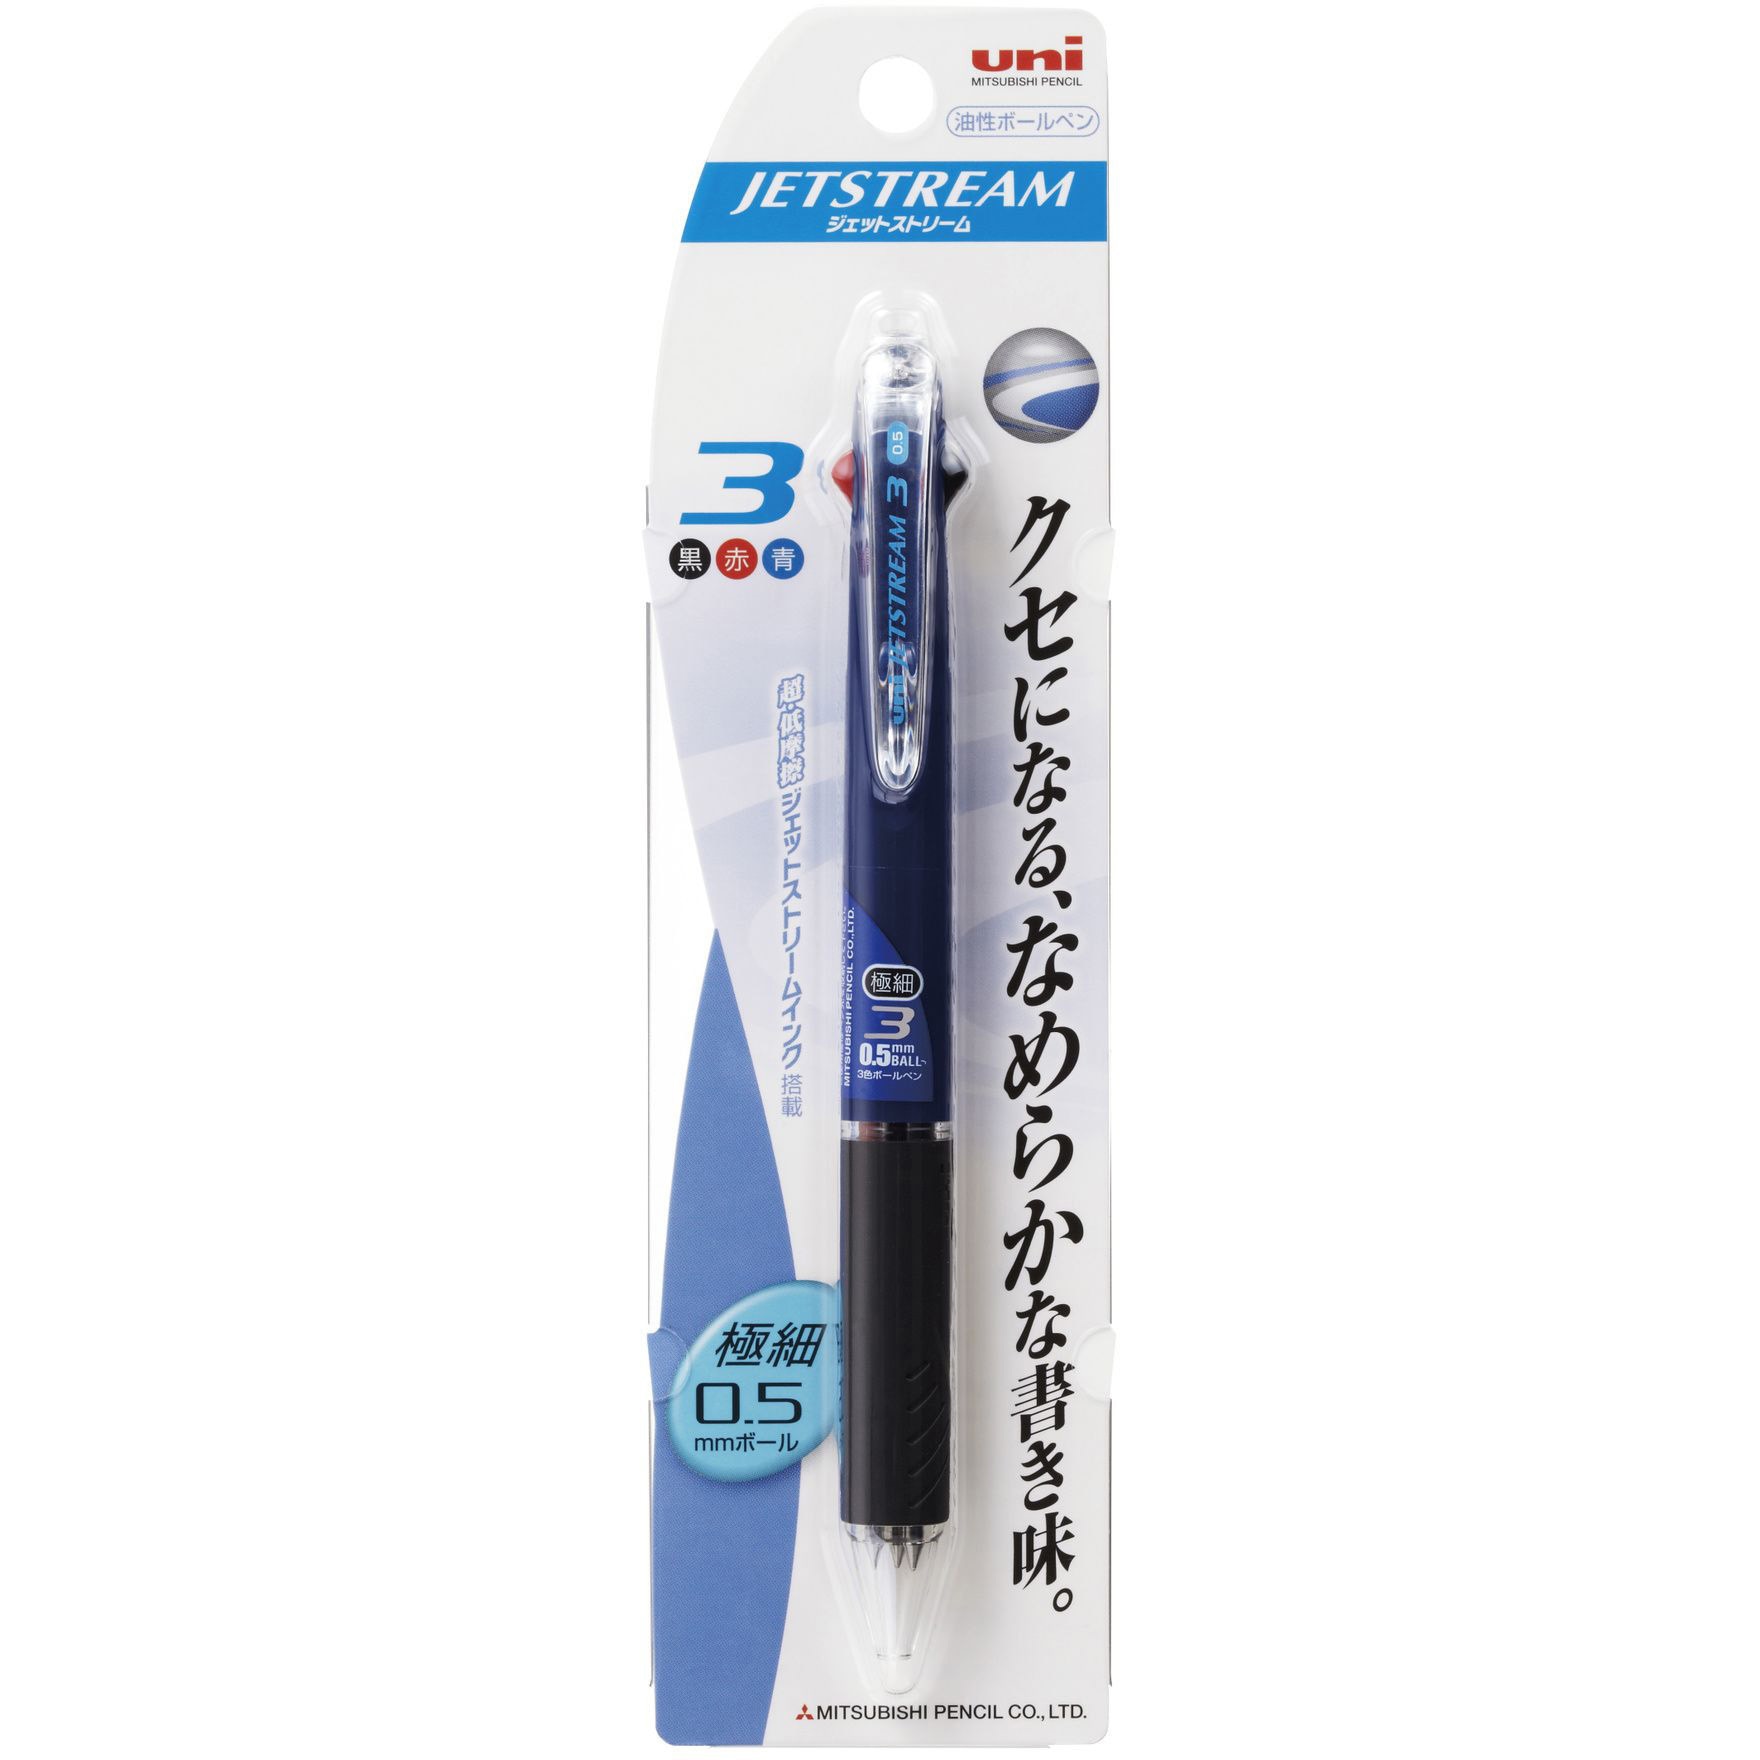 三菱鉛筆 ジェットストリーム 3色ボールペン 0.5mm SXE3-507-05 - 筆記用具